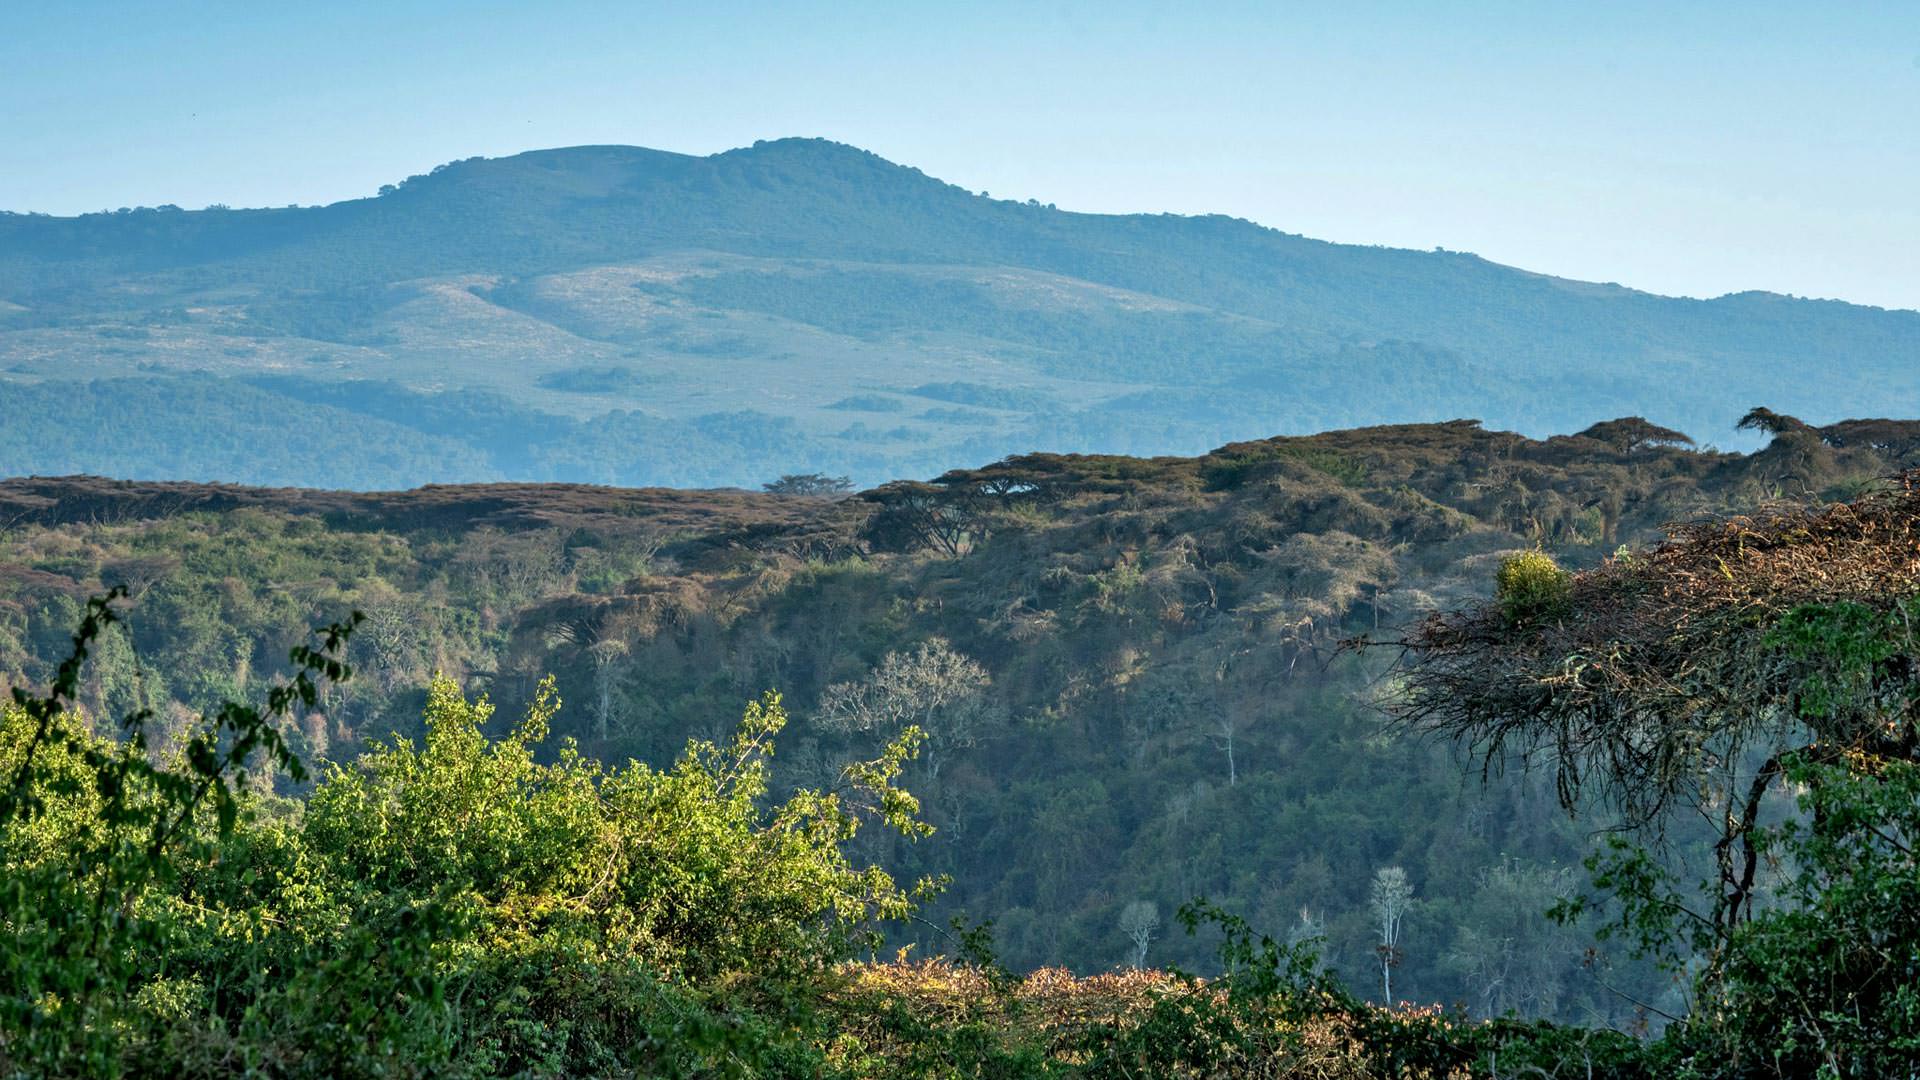 View of the Ngorongoro highlands